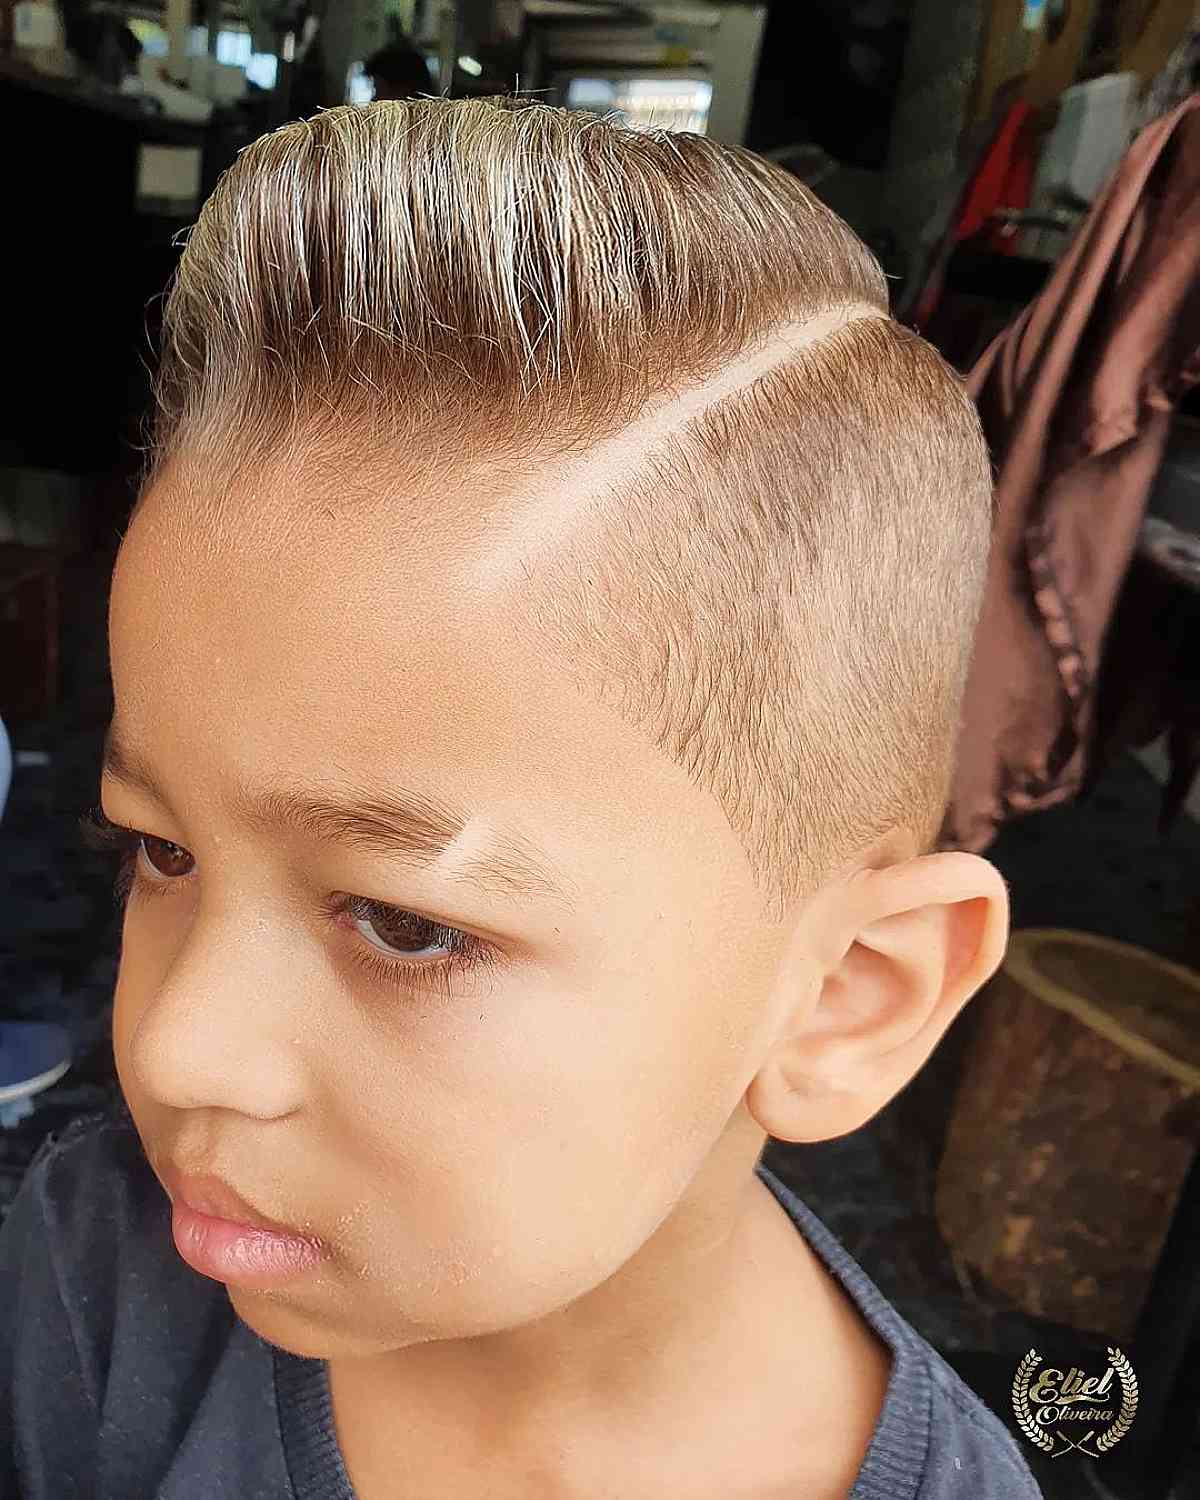 Penteado pomposo moderno para meninos